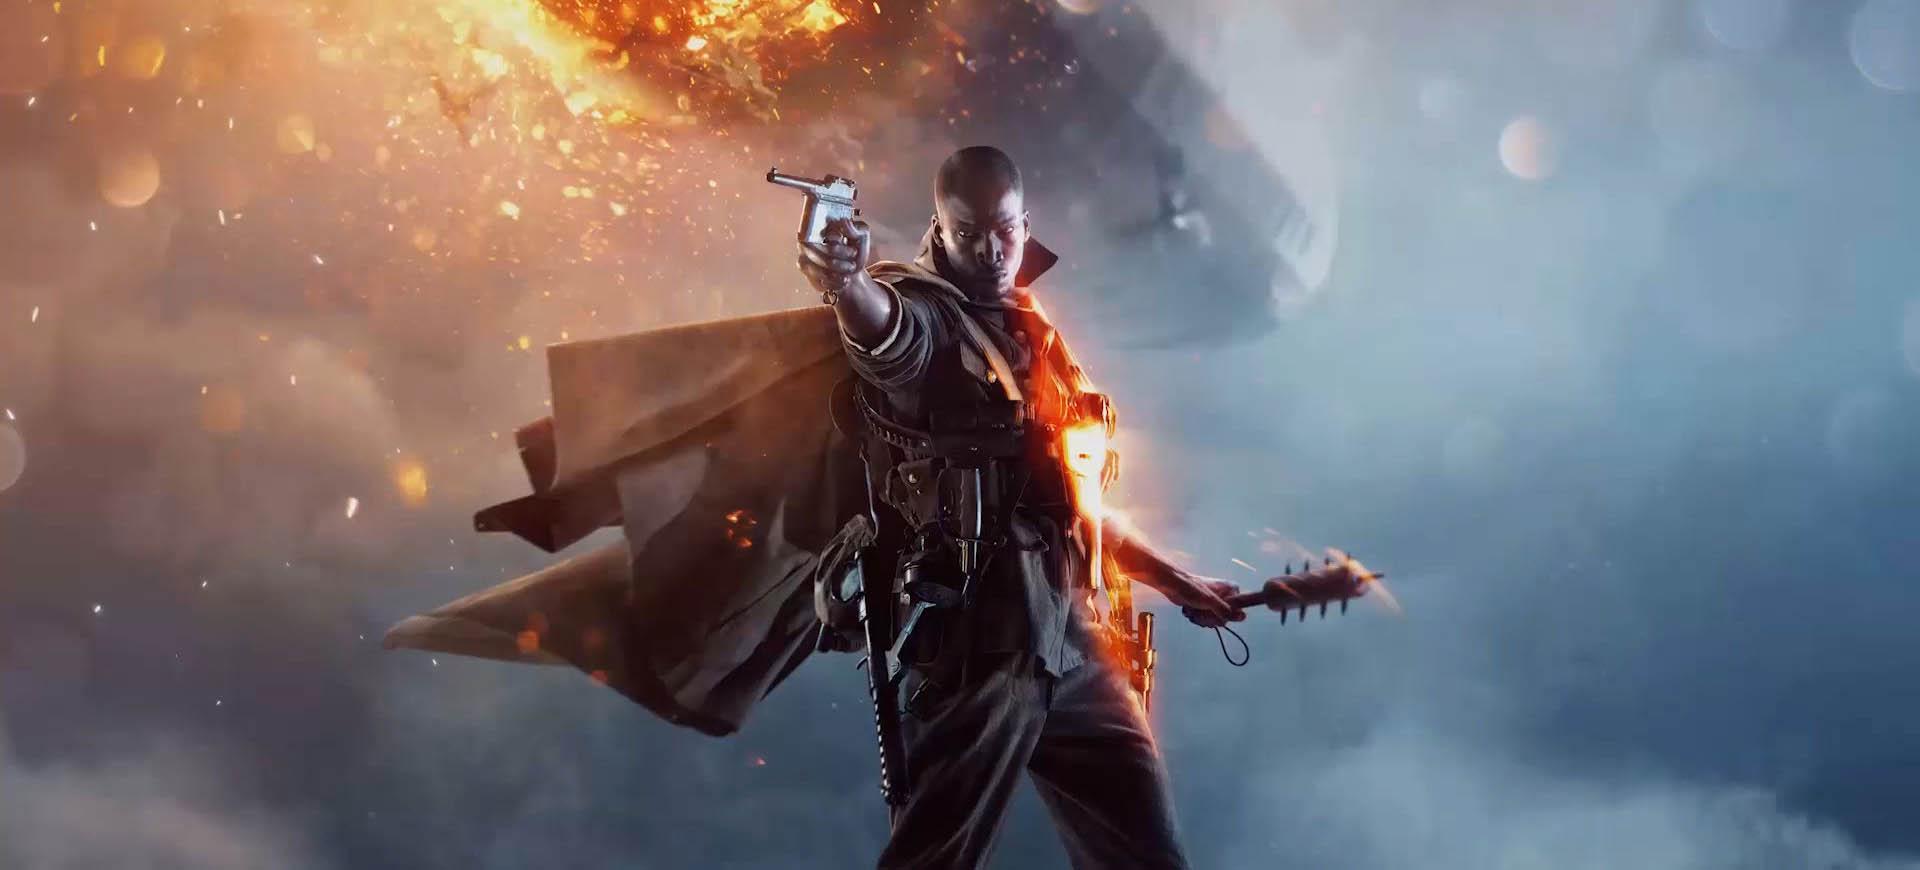 E3 2016 | Battlefield 1 - Chiến trường Đệ nhất thế chiến - Giới Thiệu Game